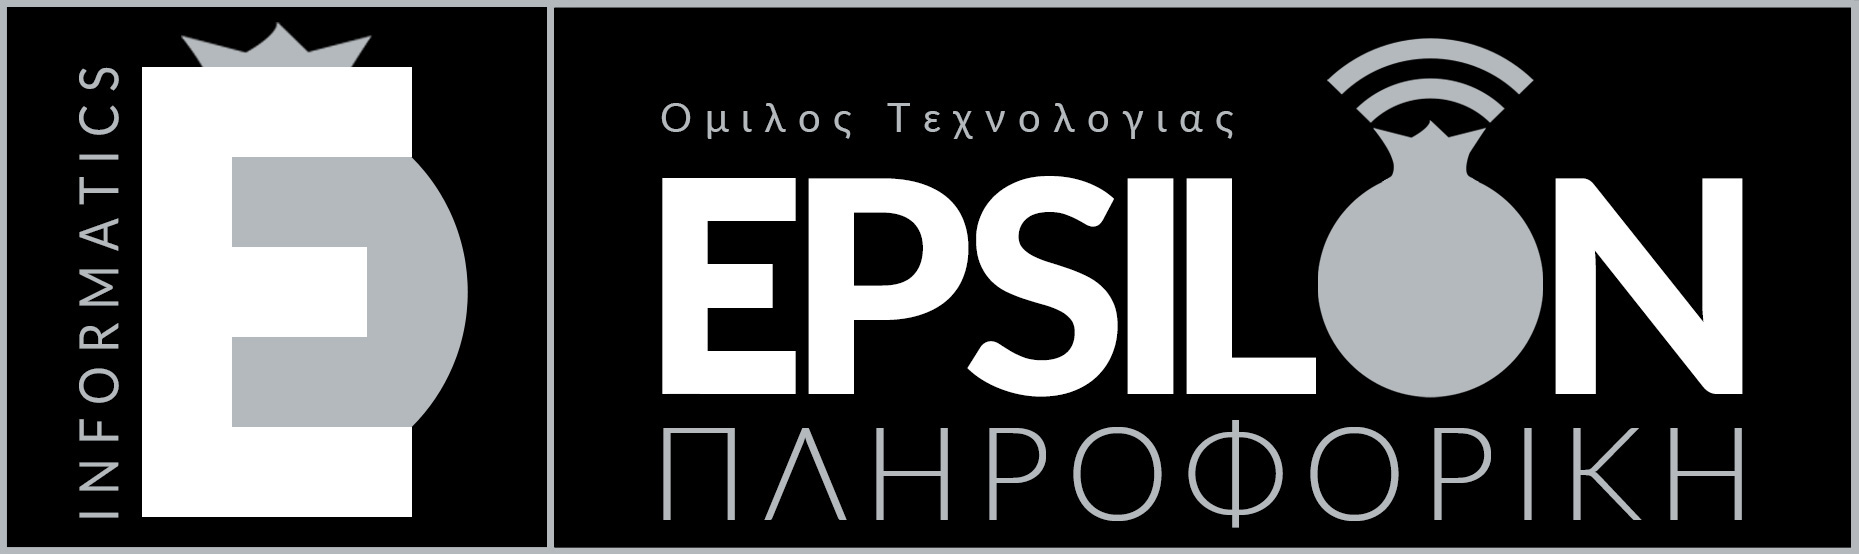 epsilon informatics logo